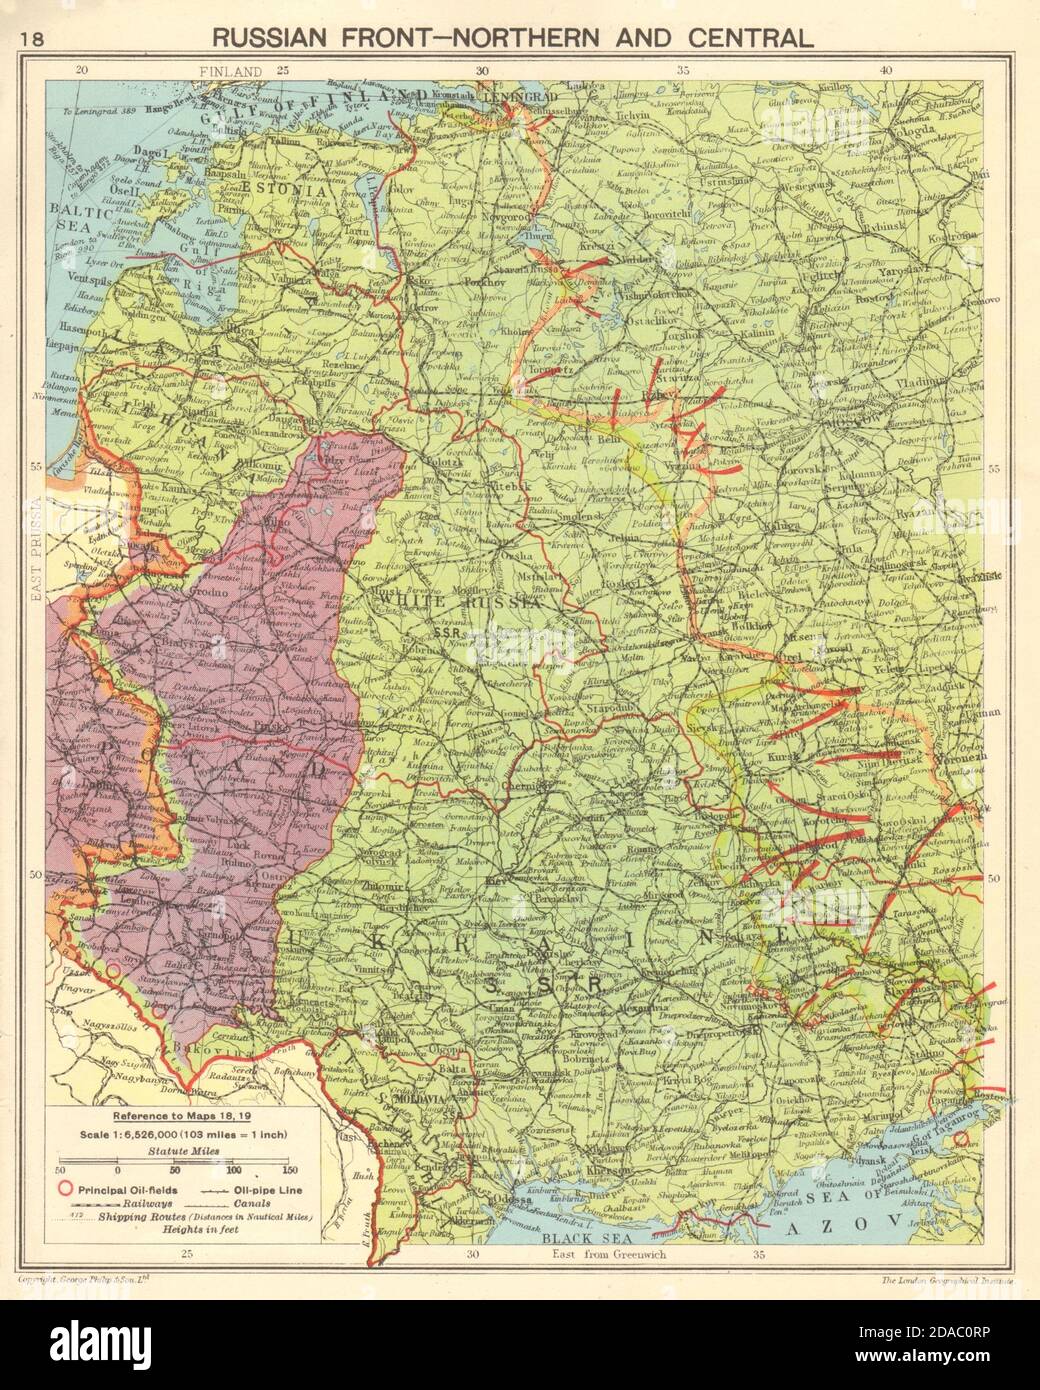 GUERRA MUNDIAL 2. Frente Oriental. Límite de avance alemán. Mapa de la ofensiva rusa de 1943 Foto de stock